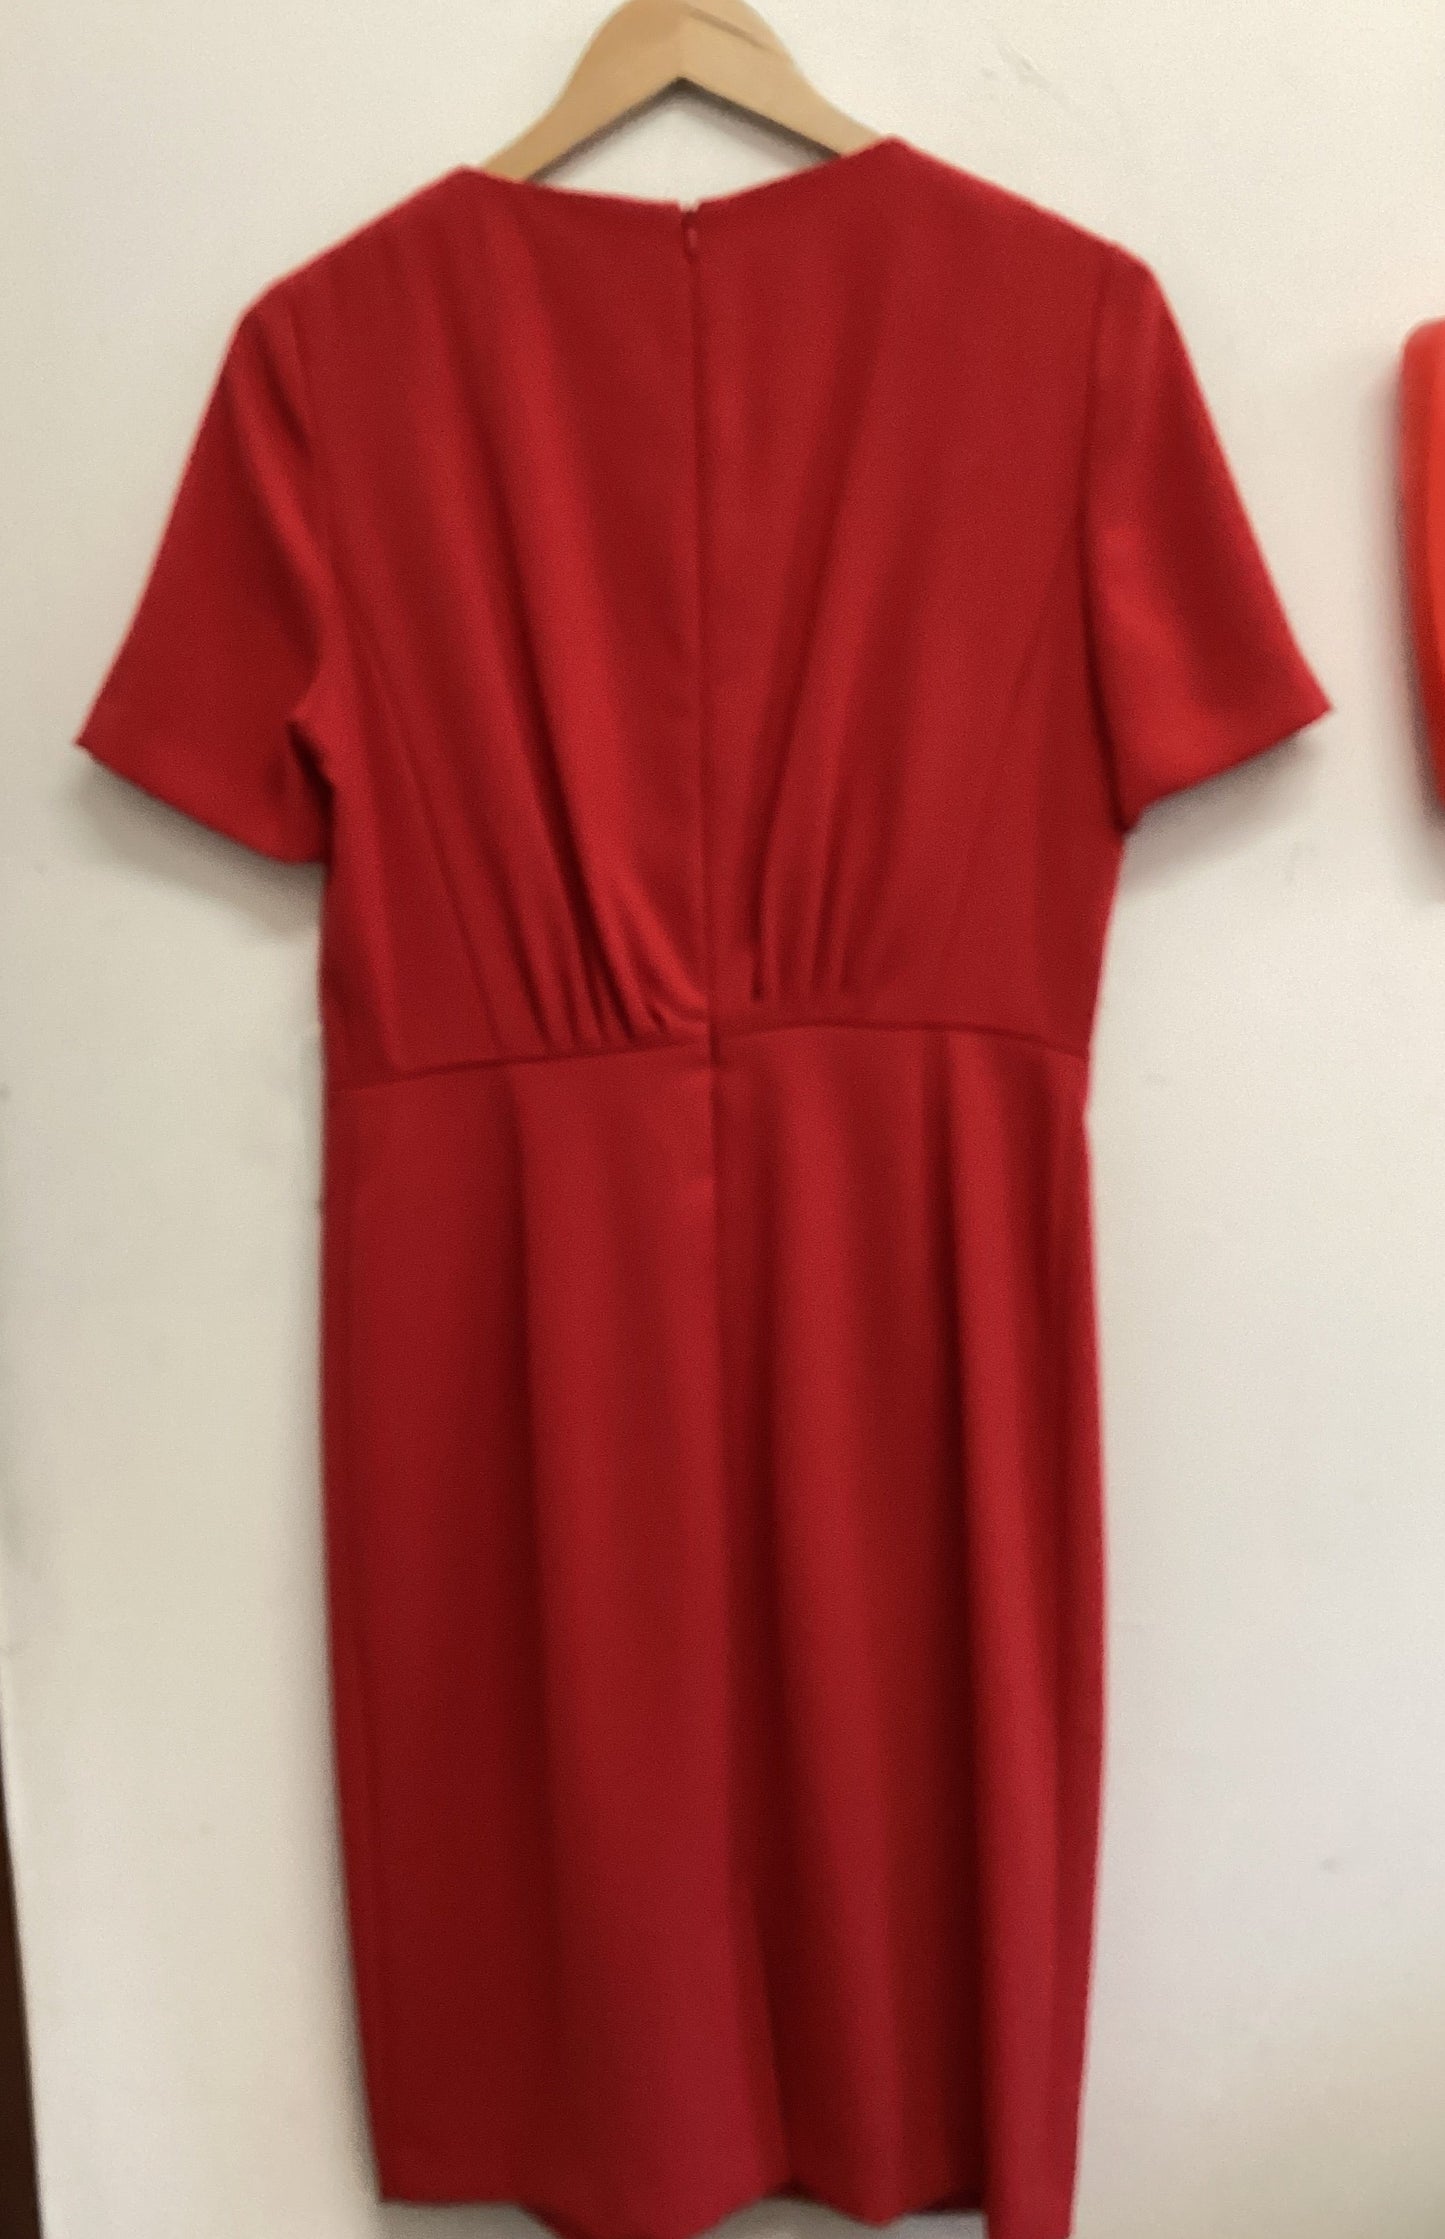 John Lewis Red dress size 12